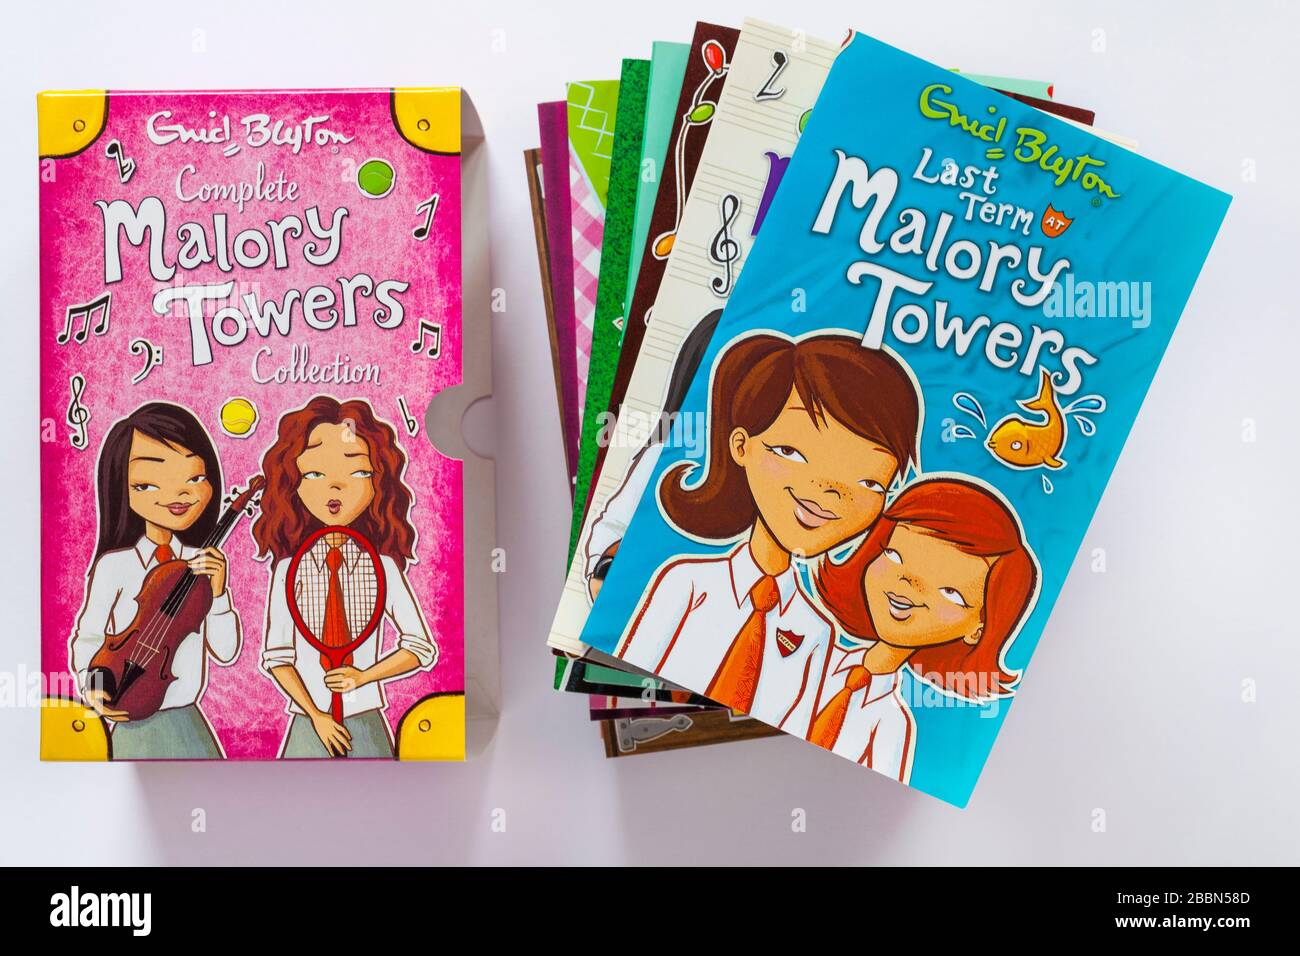 Vollständige Malory Towers Collection Bücher von Enid Blyton - Bücher, die mit dem letzten Begriff in Malory Towers gehütet wurden, sind oben isoliert auf weißem Hintergrund Stockfoto